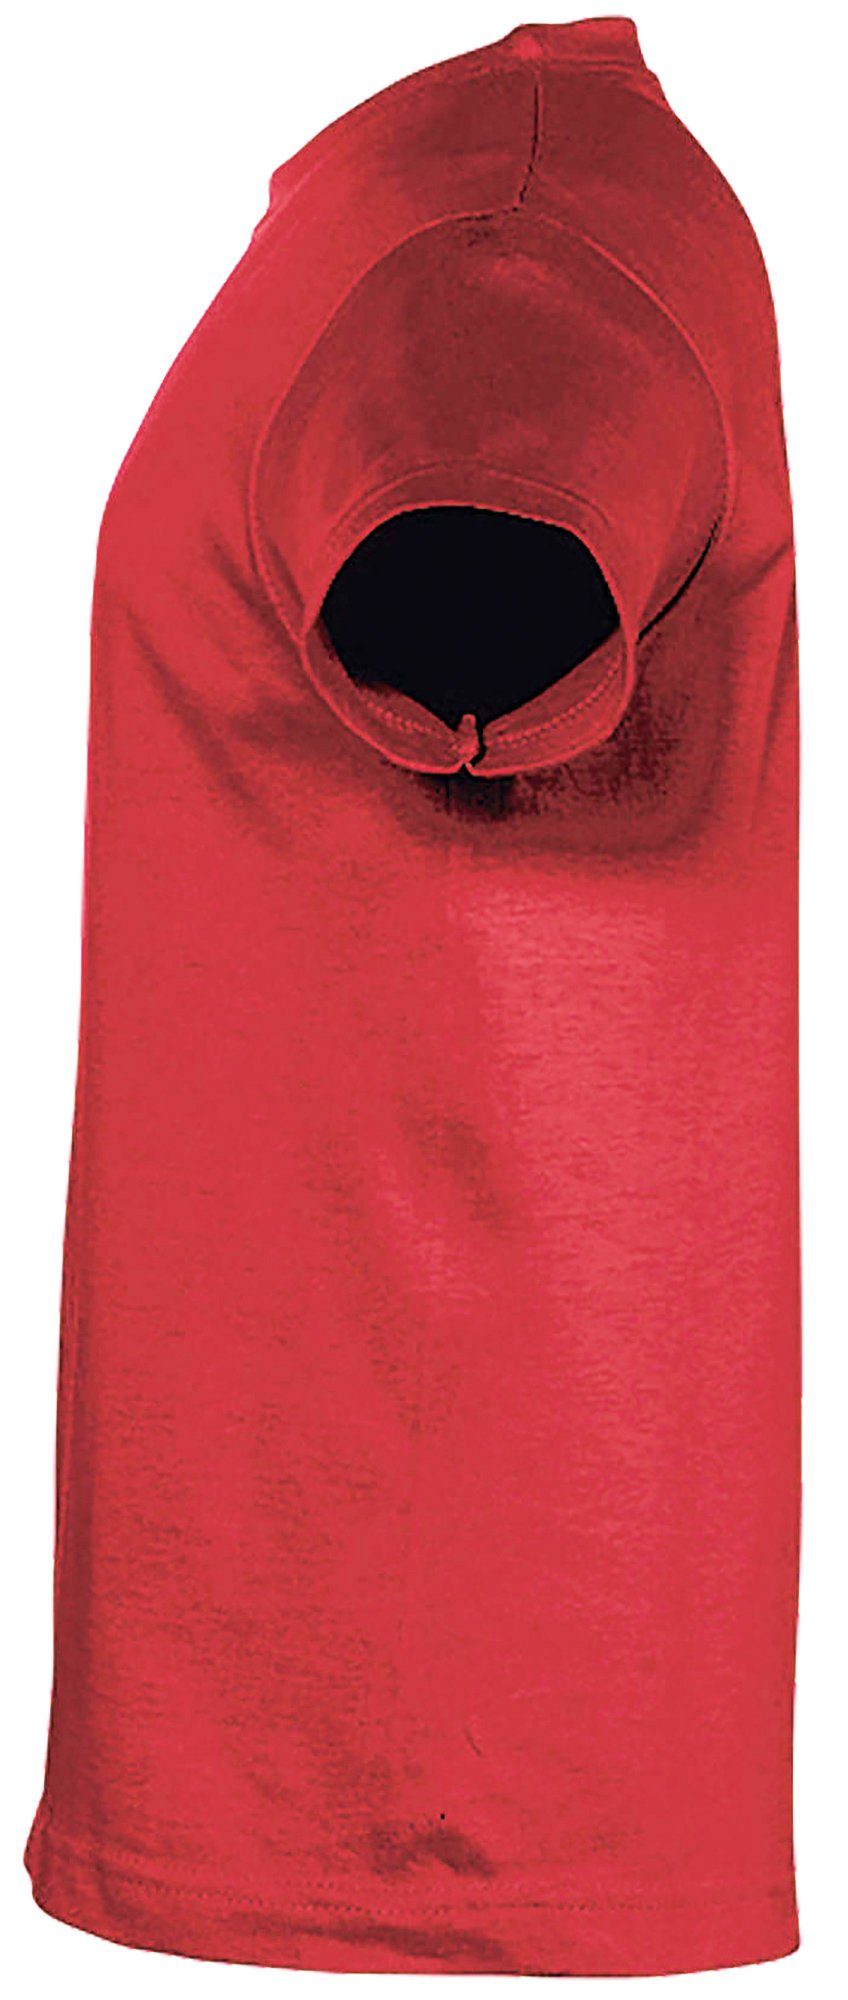 kuschelnde Mädchen Baumwollshirt Aufdruck, Yang zwei T-Shirt im mit rot Yin Pferde MyDesign24 bedrucktes Stil Print-Shirt i152